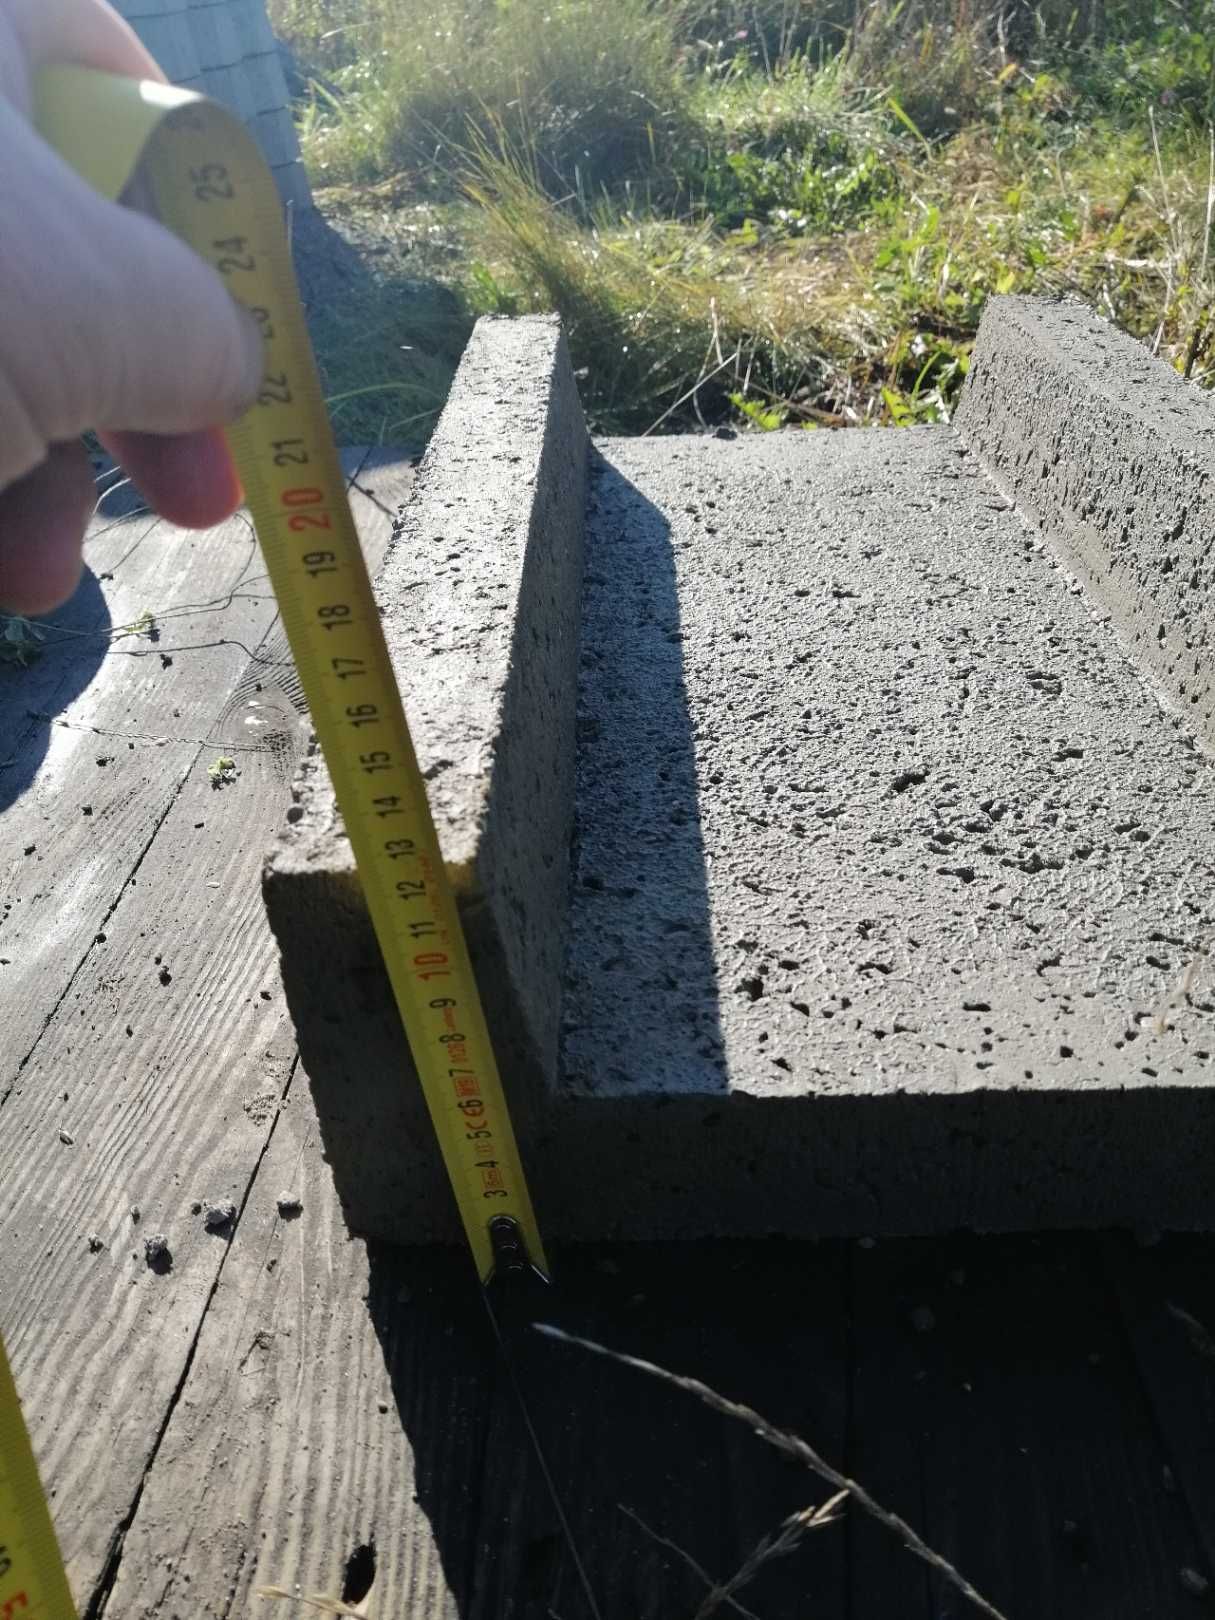 Korytko betonowe ściekowe